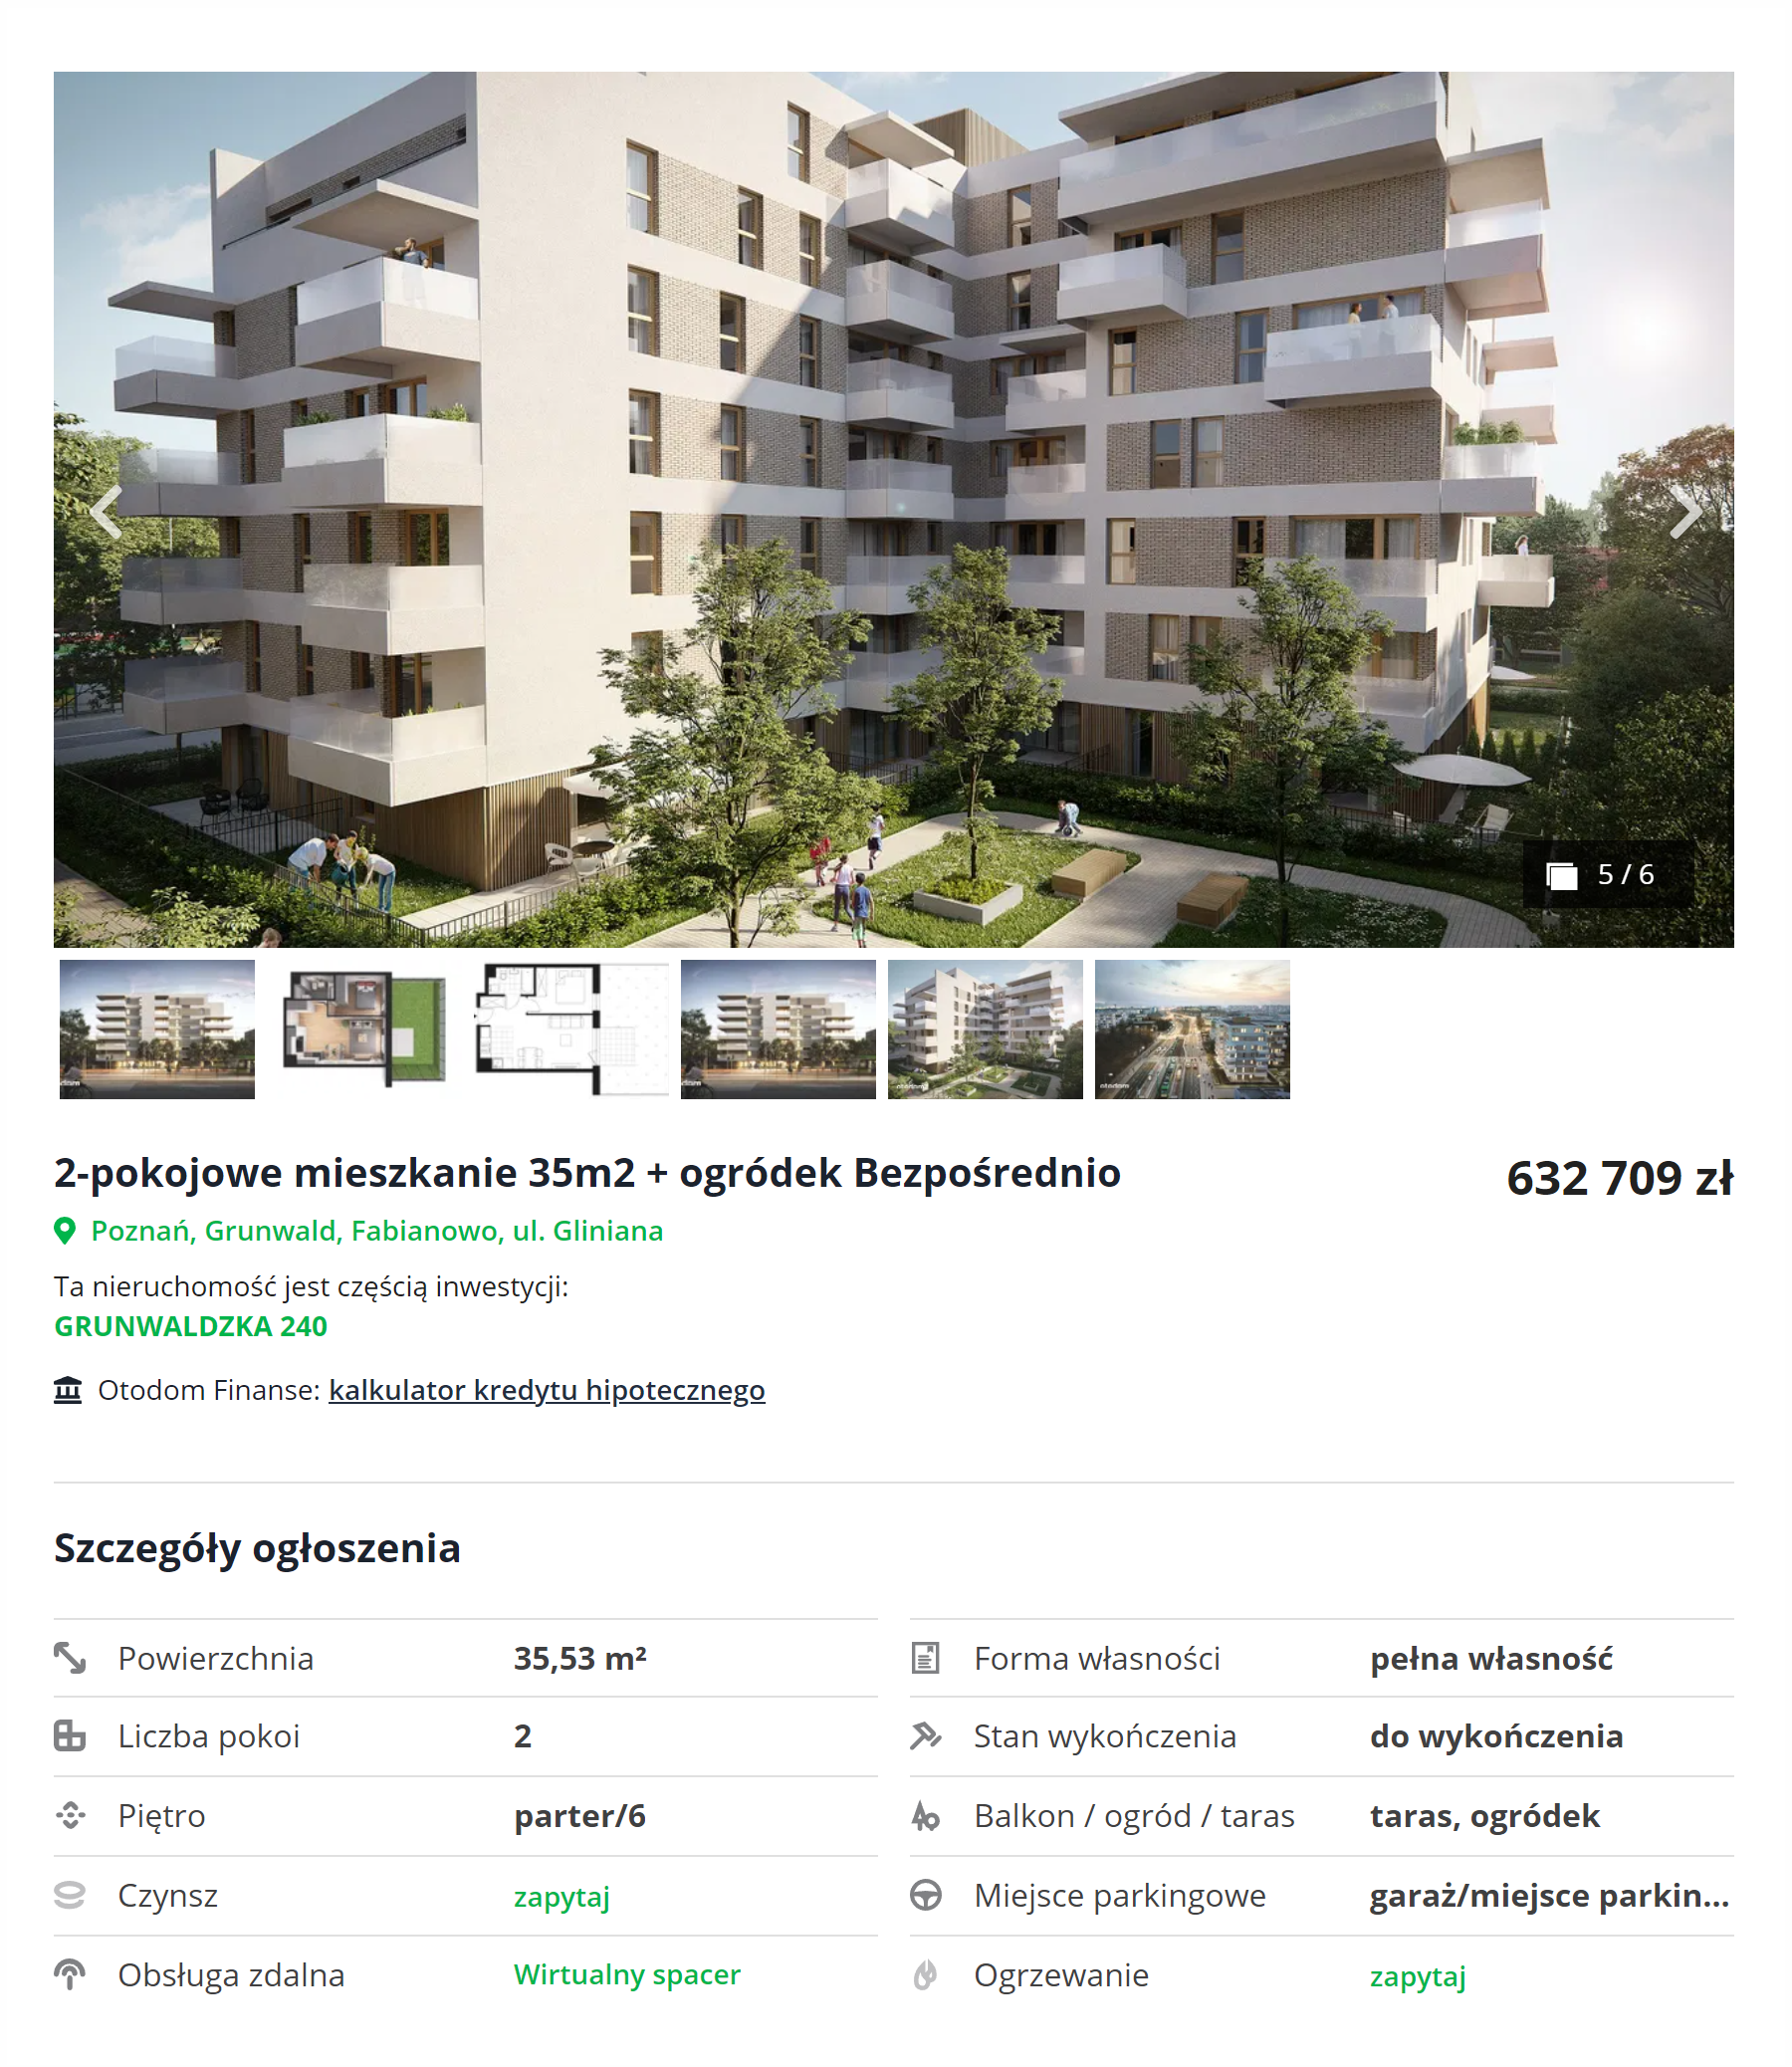 Квартира в новостройке будет стоить 632 709 PLN (8 269 506 ₽). Источник: otodom.pl